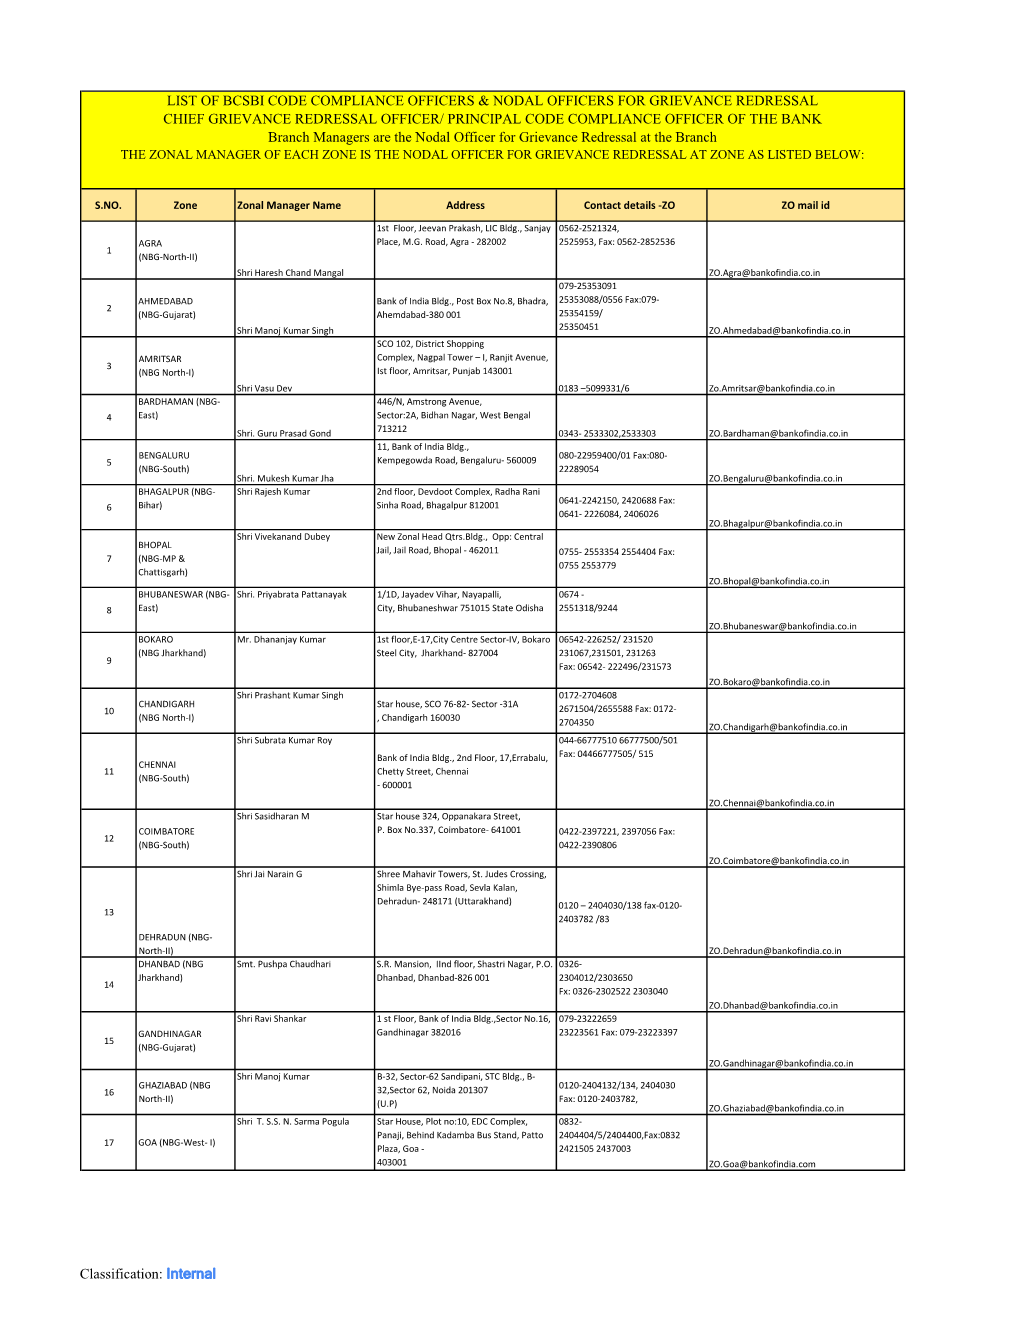 List of Nodal Grievance Redressal Officer